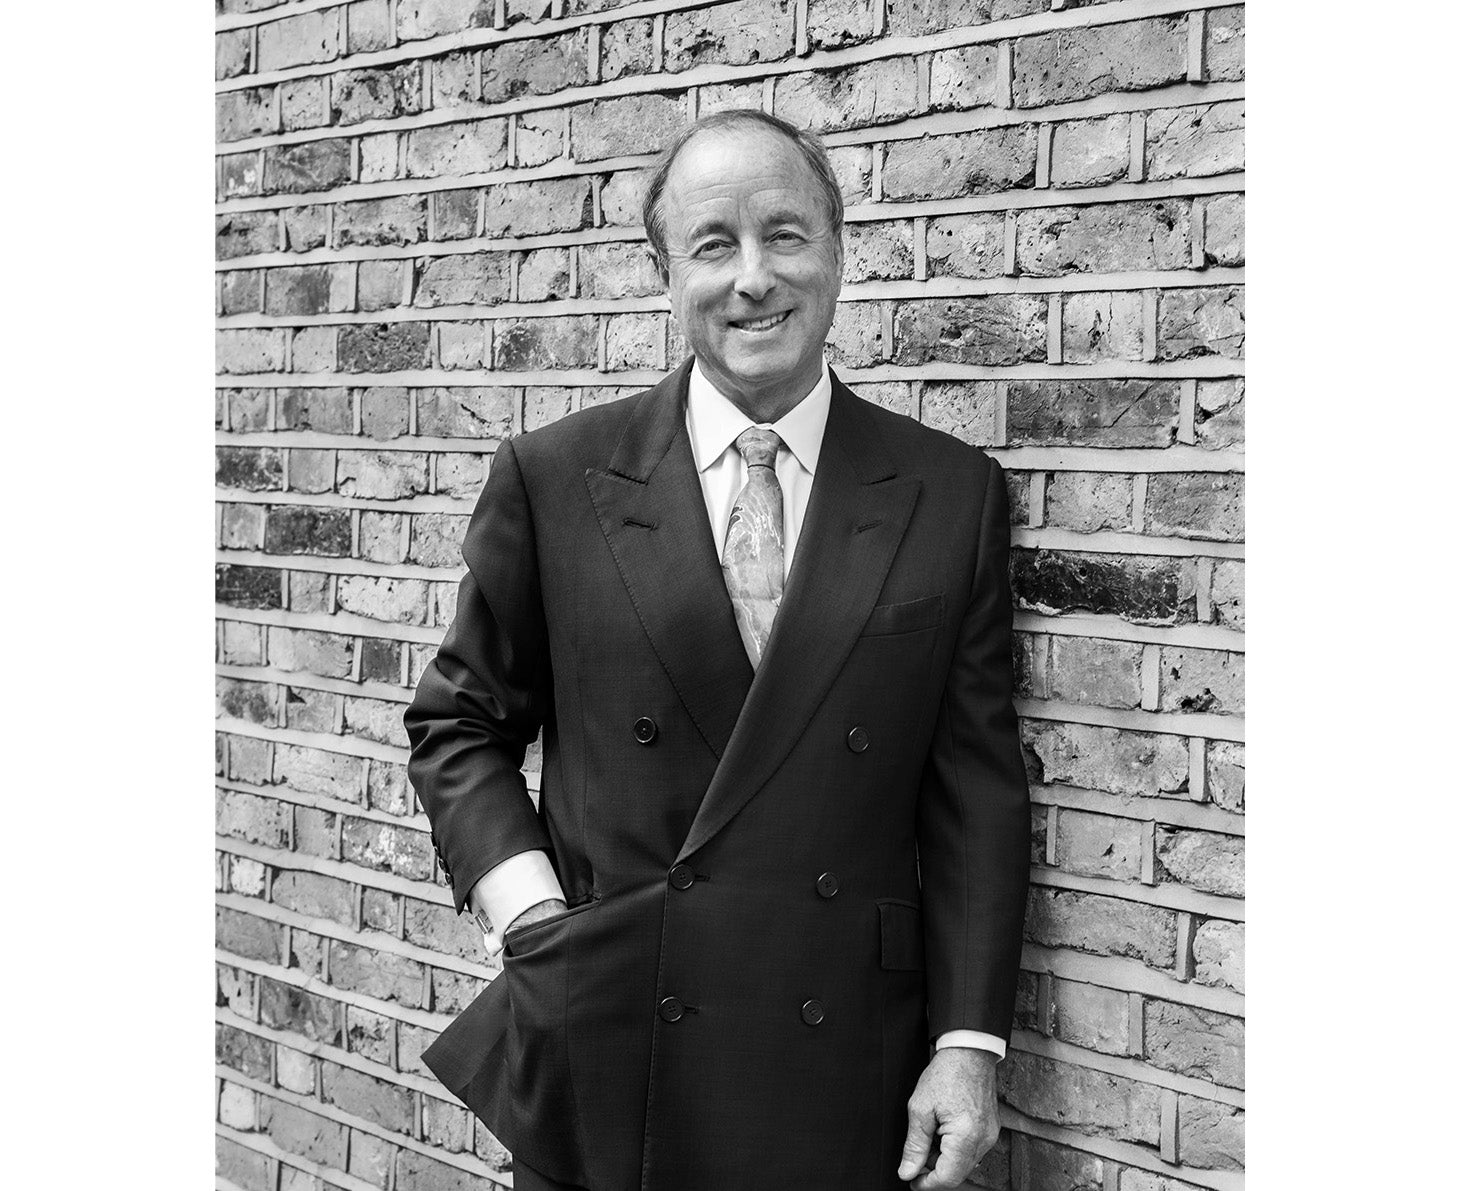 Robert Ettinger CEO of ettinger luxury leather goods